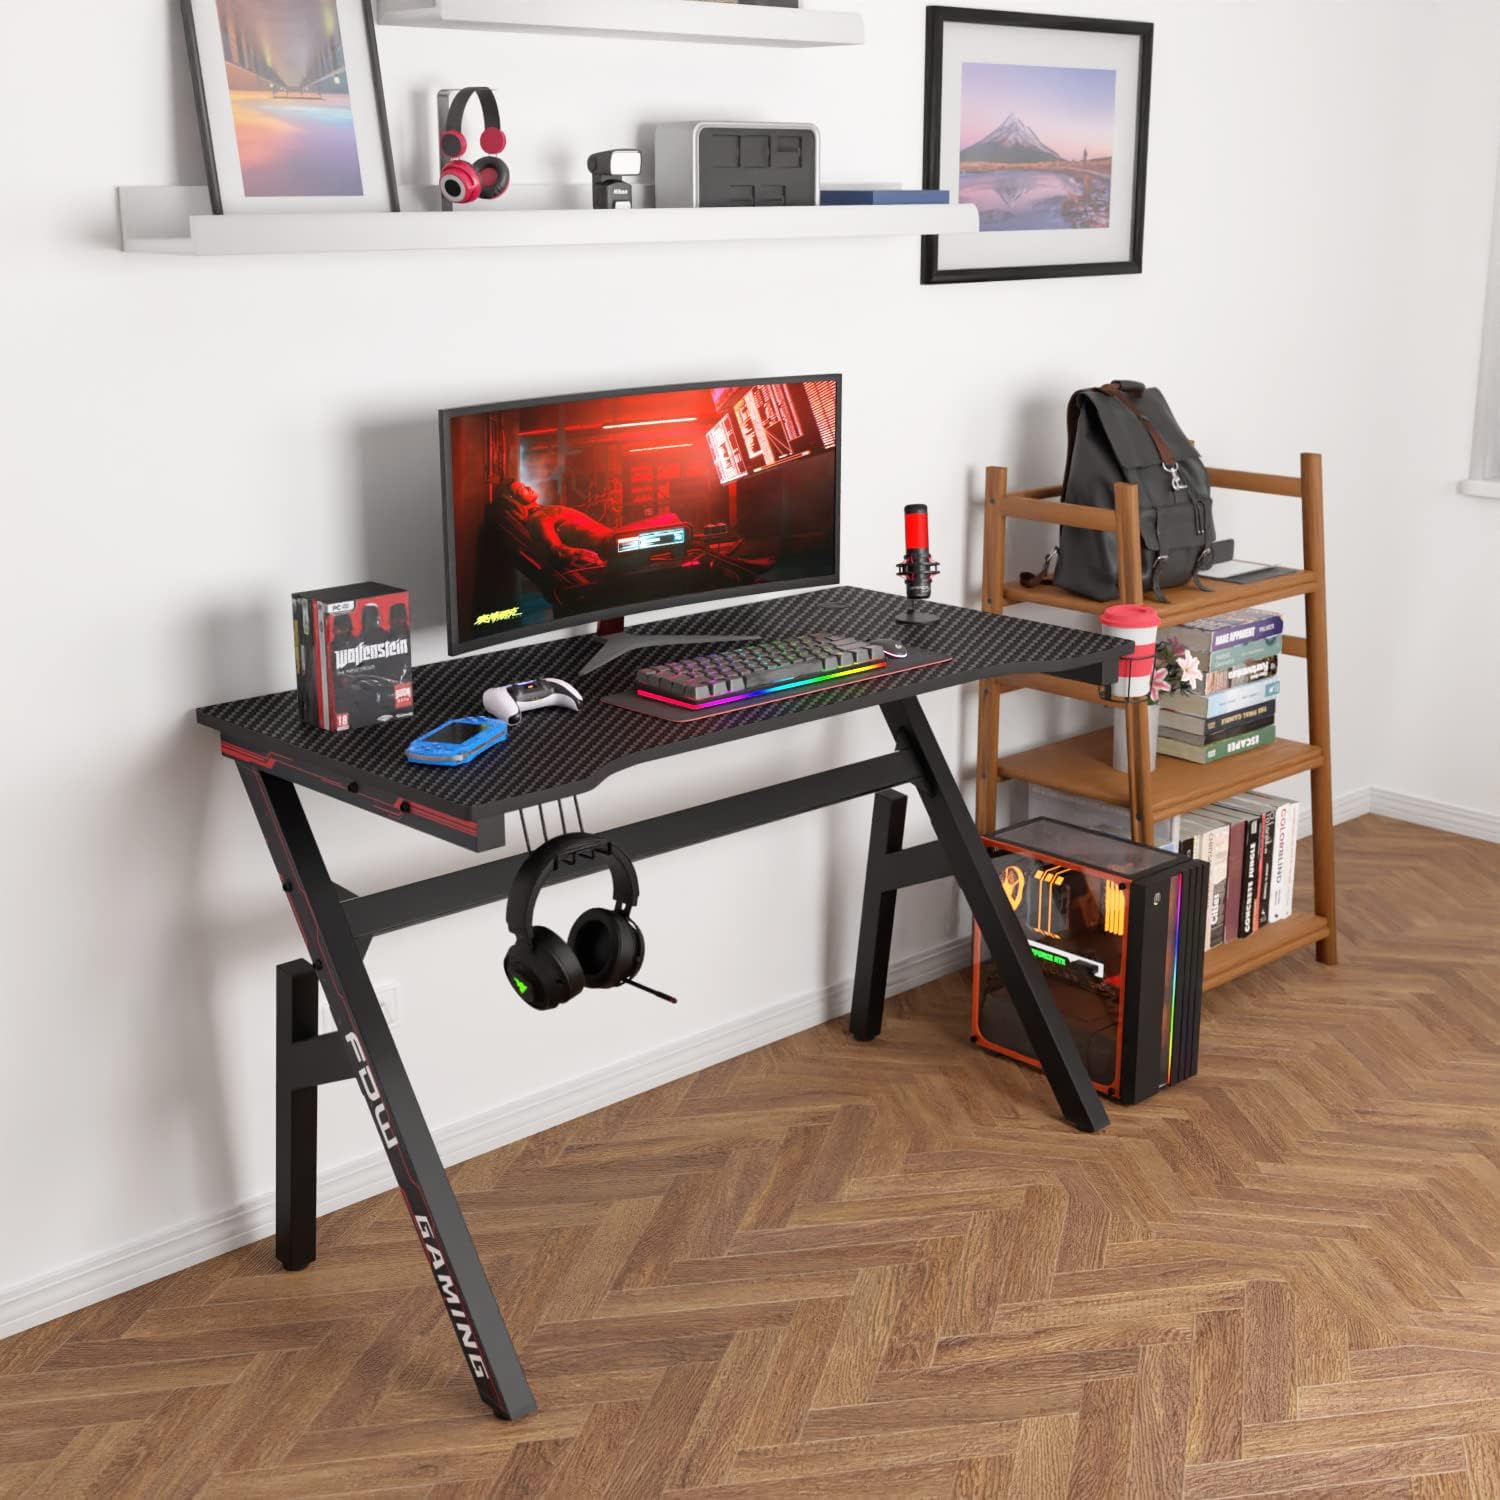 Gaming Desk Computer Desk 47 Inch Home Office Desk Extra Large Modern Ergonomic Black PC Carbon Fiber Table Gamer Workstation with Cup Holder Headphone Hook